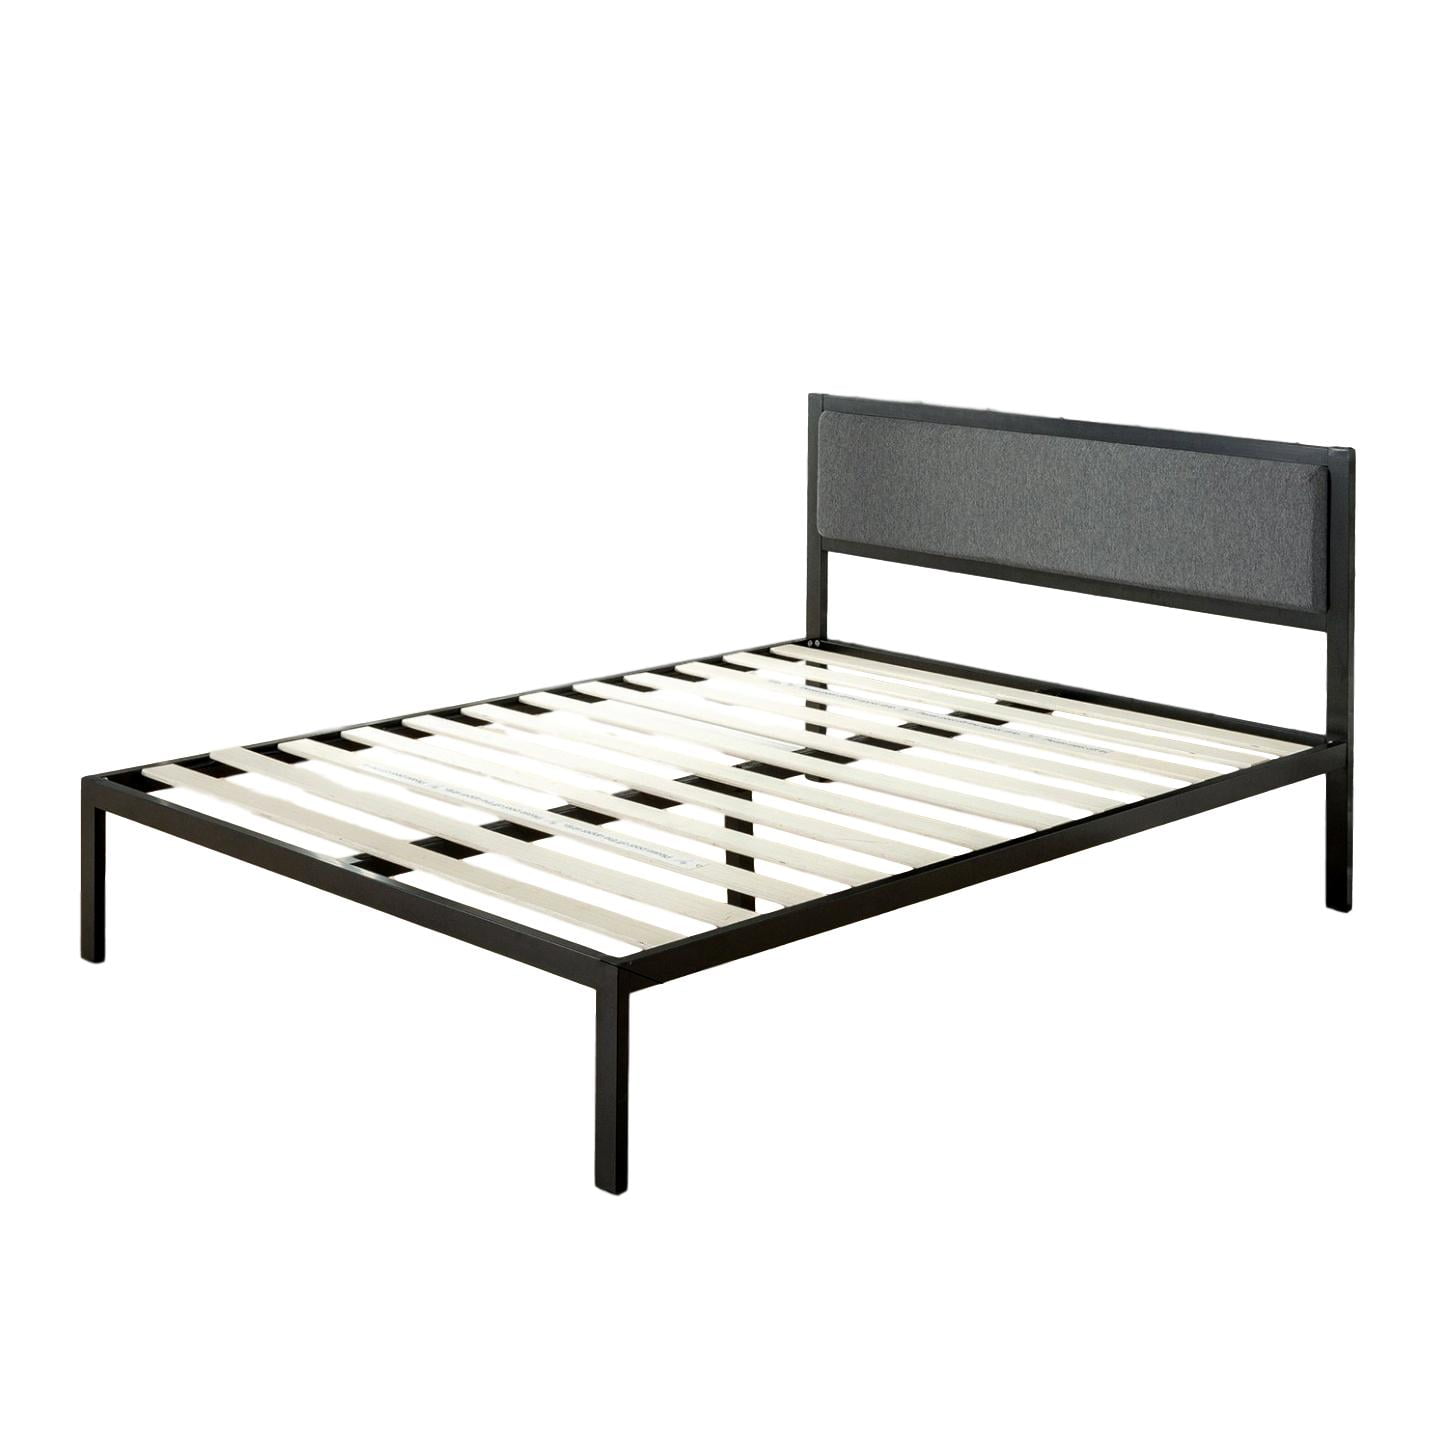 Viscologic Platform Metal Bed Frame, Can You Put Slats On A Metal Bed Frame